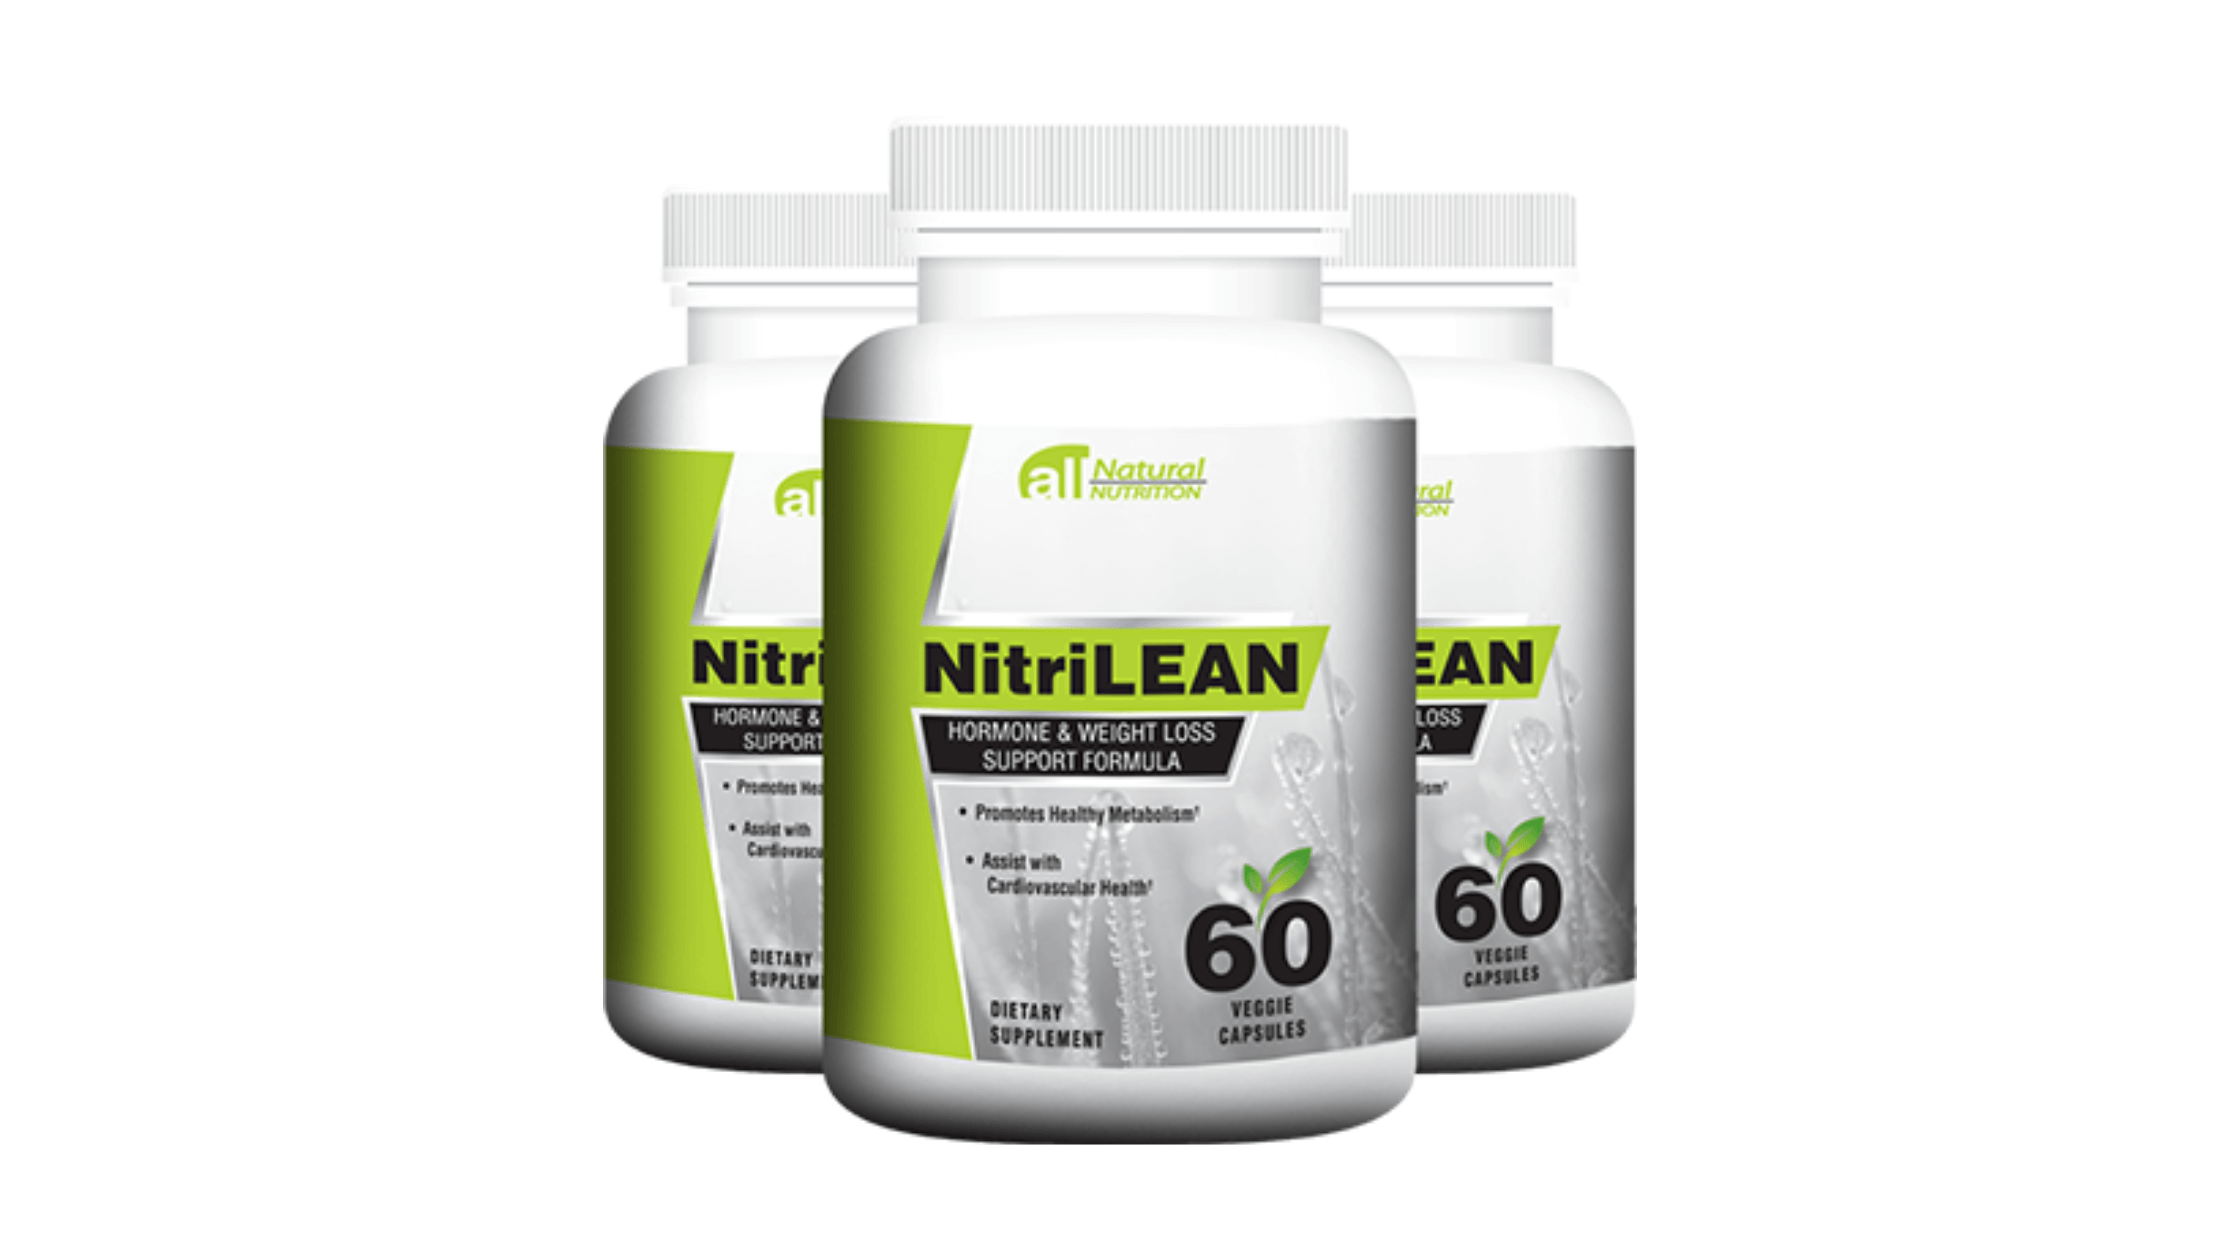 NitriLean supplement